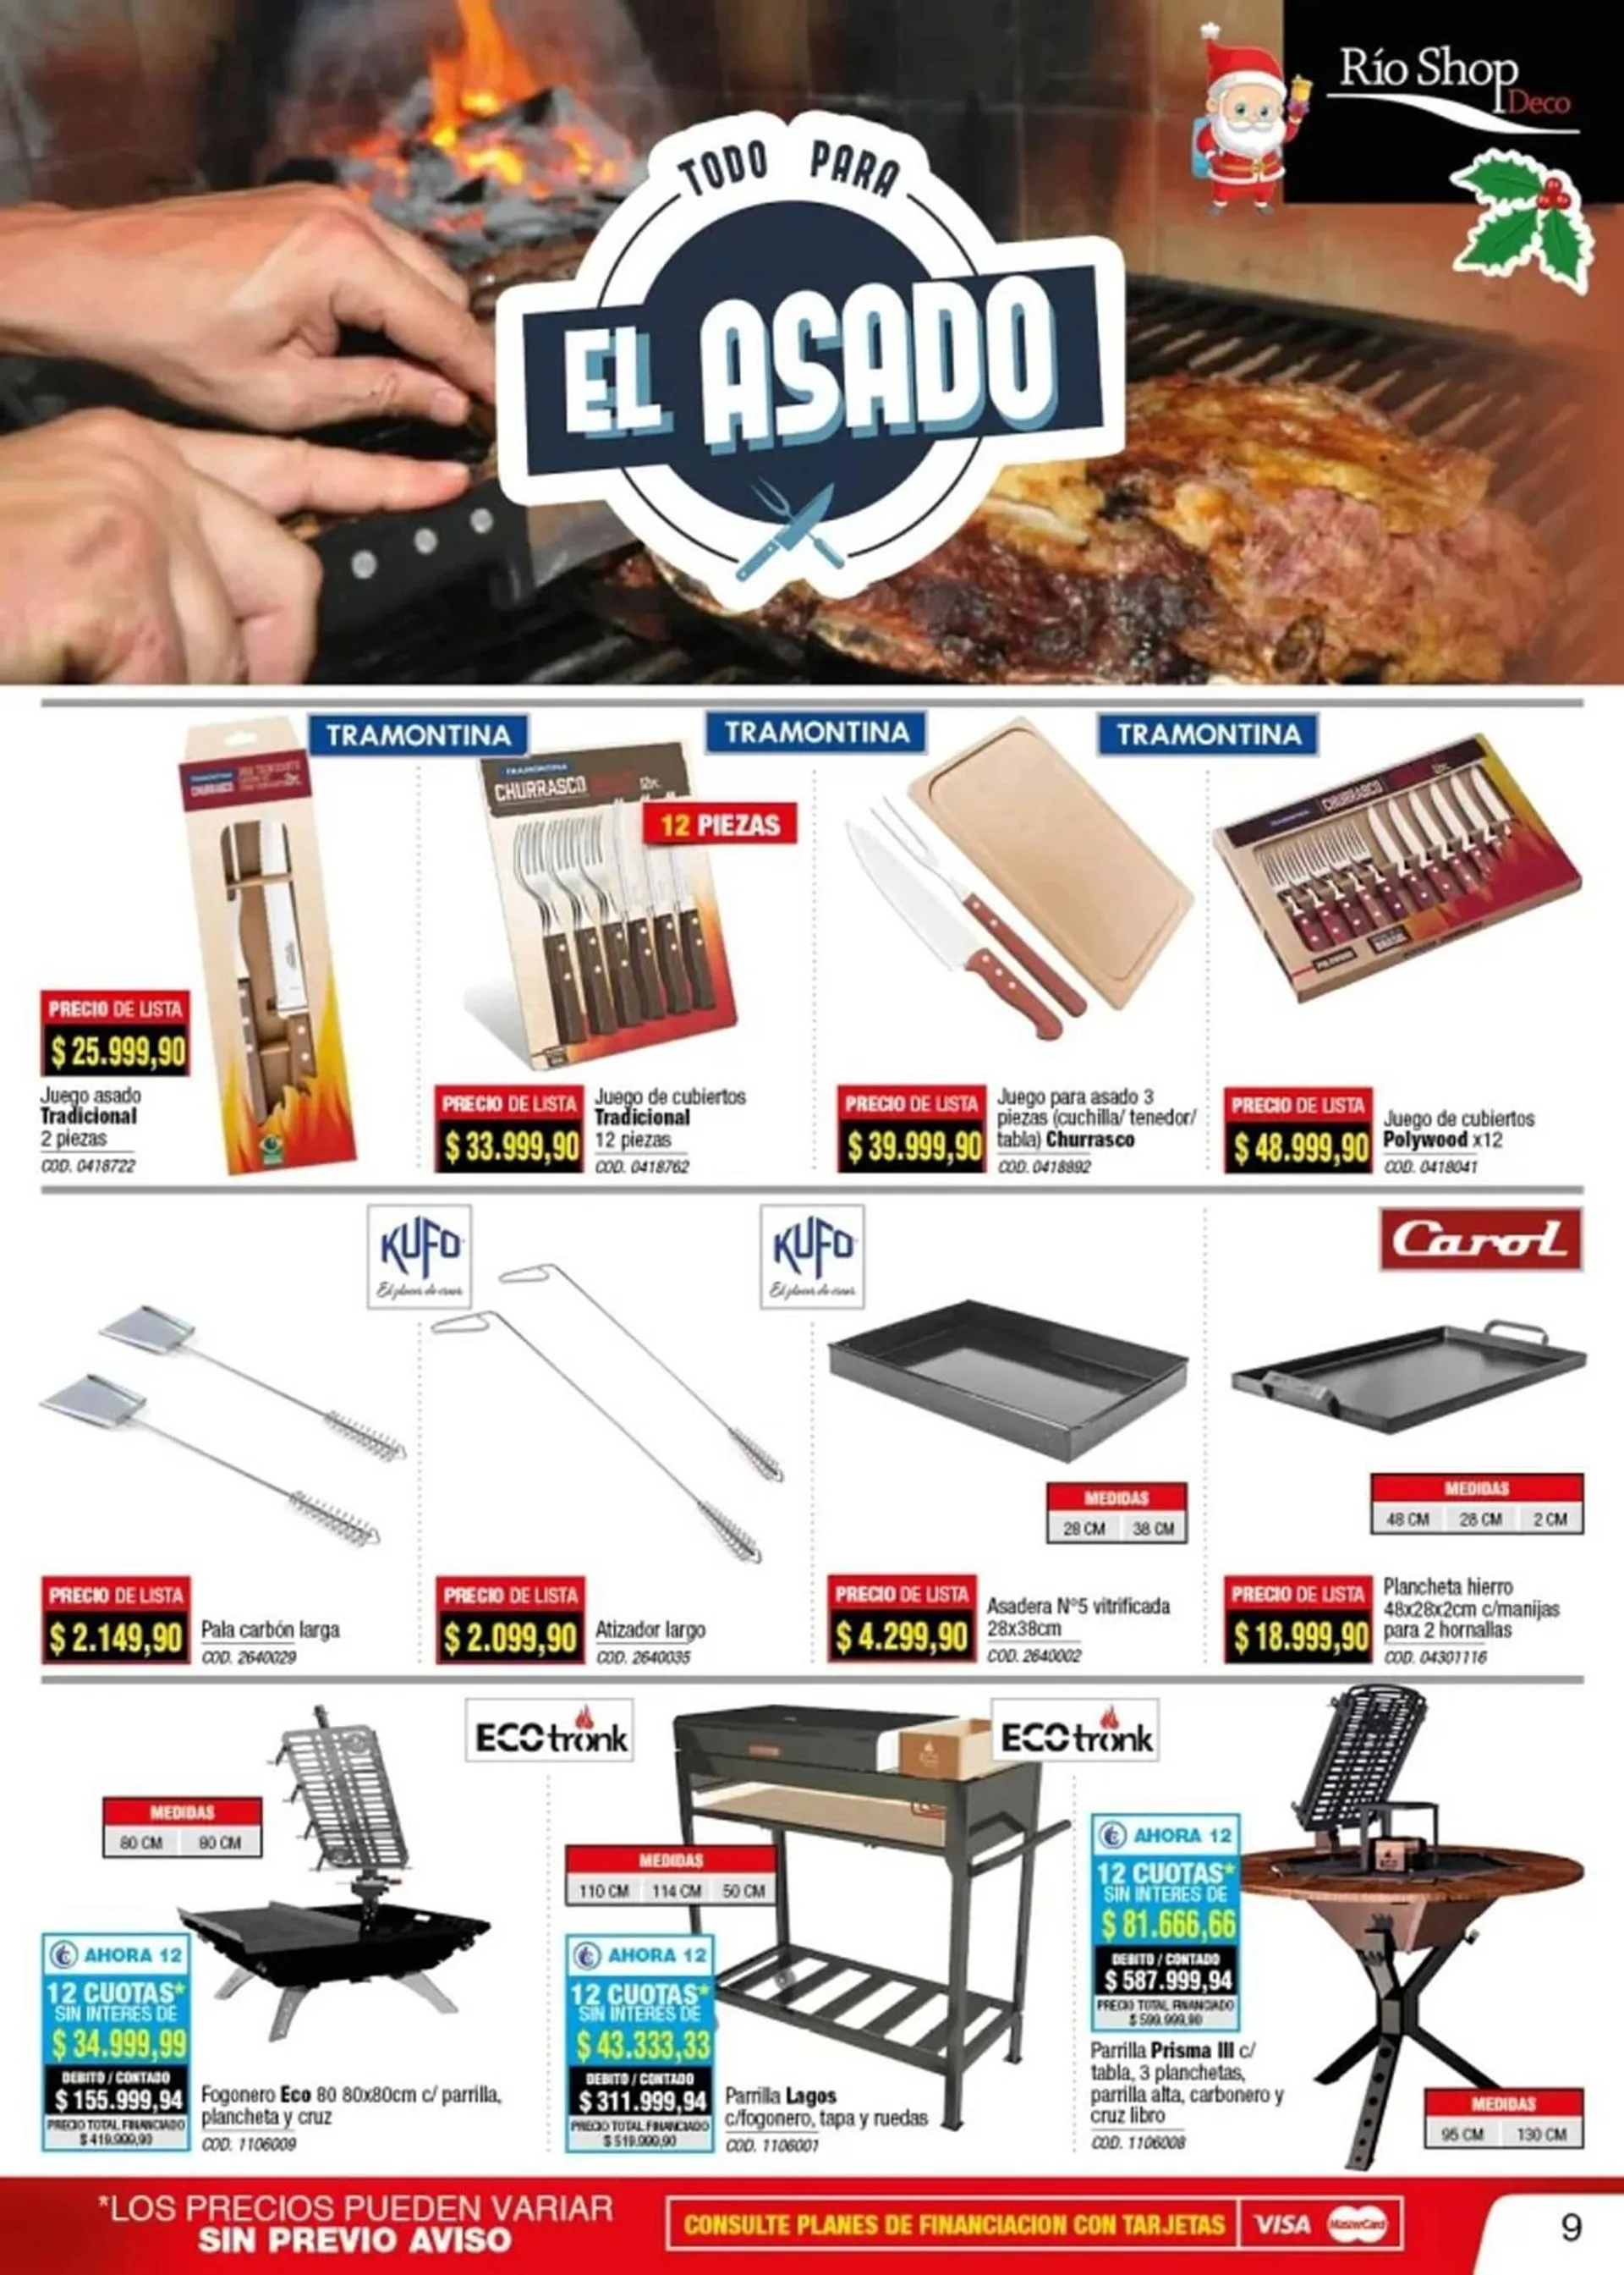 Ofertas de Catálogo Rio Shop Deco 19 de diciembre al 31 de diciembre 2023 - Página 41 del catálogo